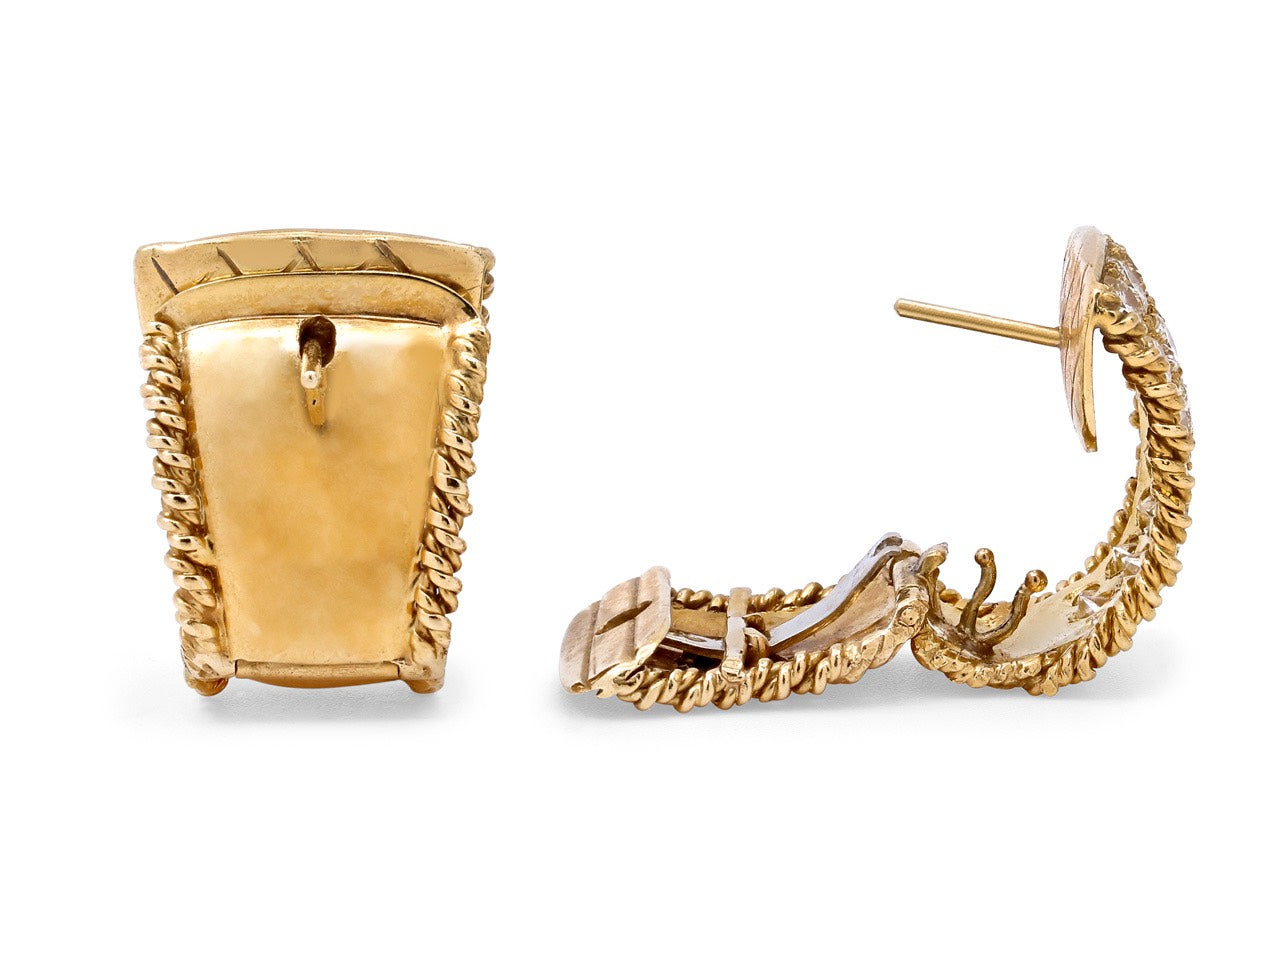 Flared Diamond Earrings in 18K Gold